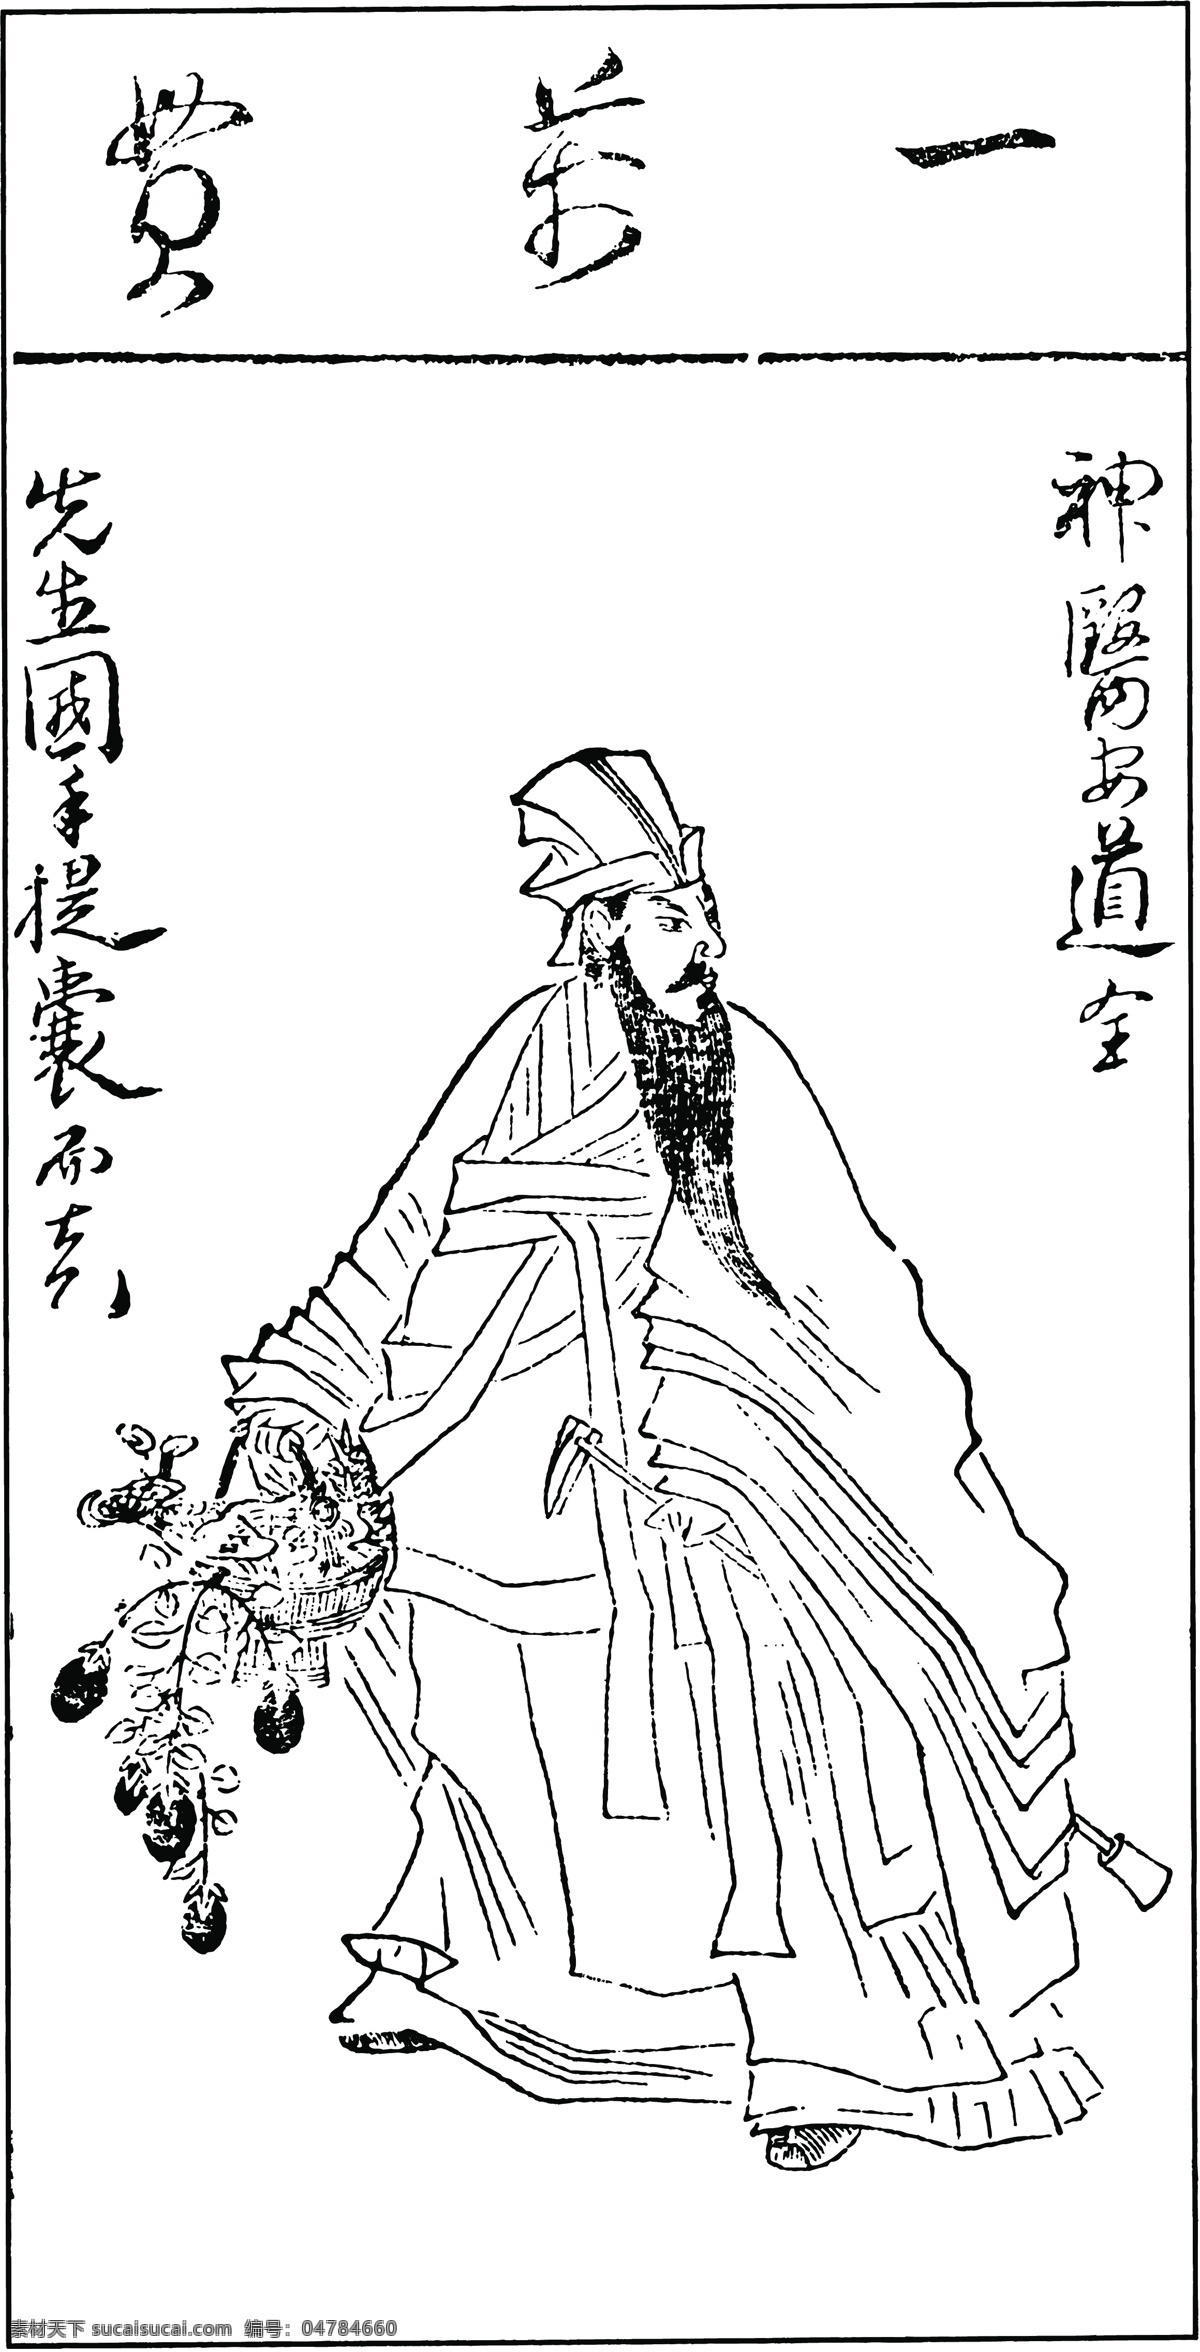 中国 古典文学 插图 木刻版画 传统文化 中国传统文化 设计素材 版画世界 书画美术 白色